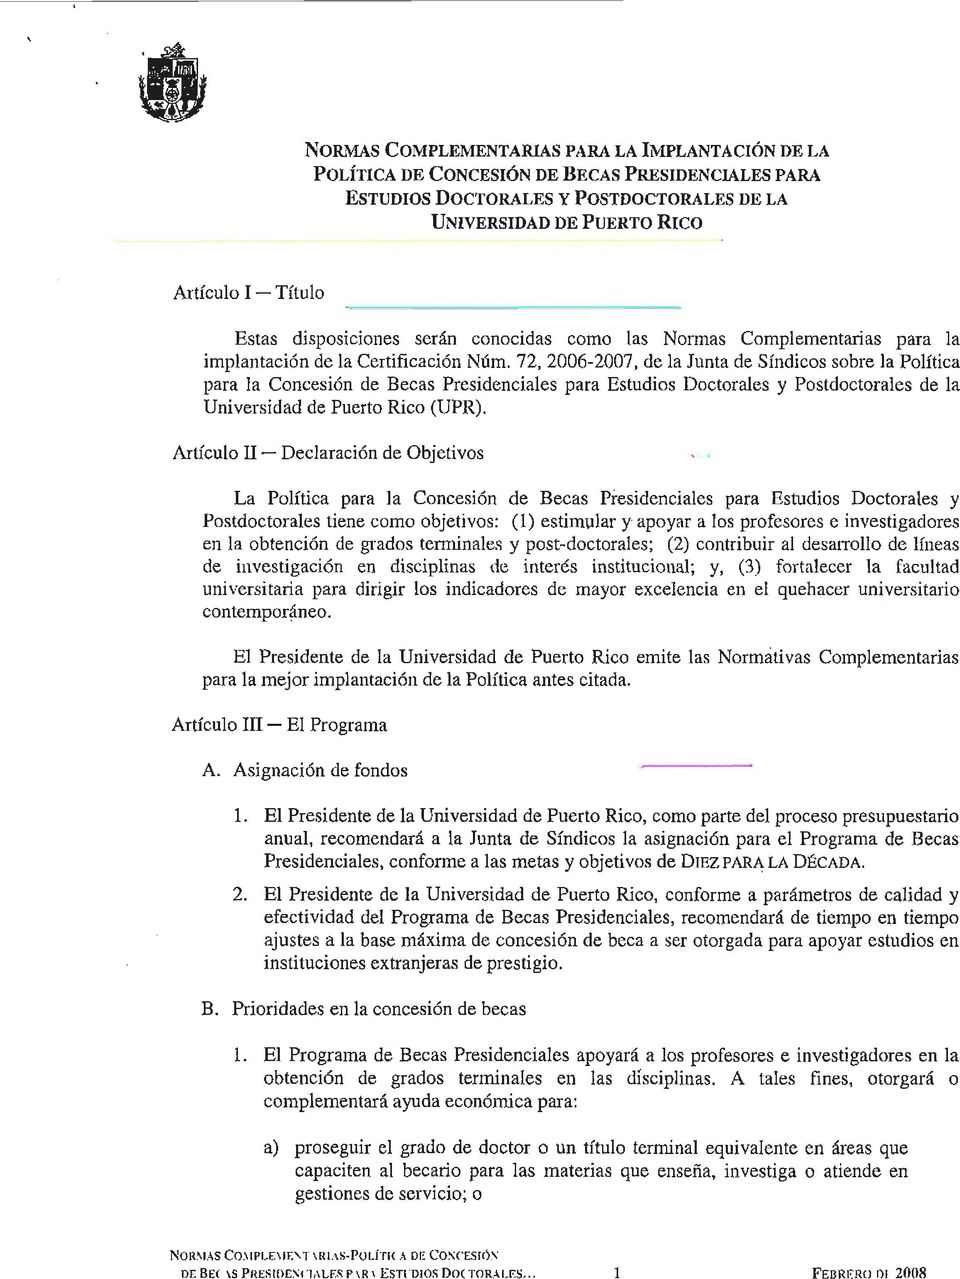 72, 2006-2007, de la Junta de Síndicos sobre la Política para la Concesión de Becas Presidenciales para Estudios Doctorales y Postdoctorales de la Universidad de Puerto Rico (UPR).